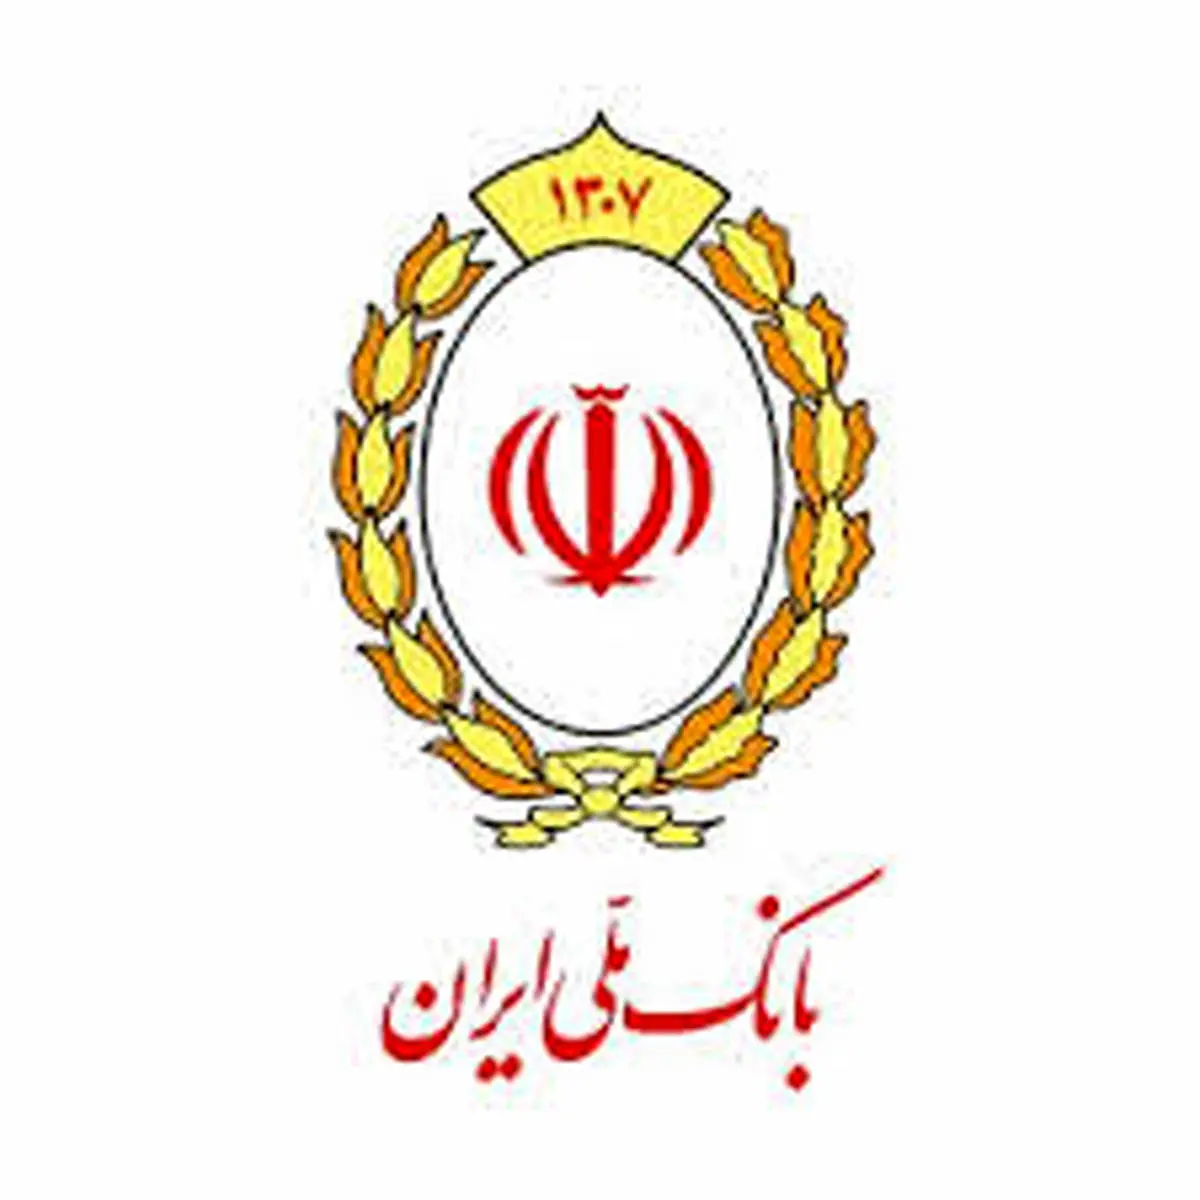 مسابقه «گنج» بانک ملی ایران، فرصتی برای سنجش تاب آوری در فضای مجازی

